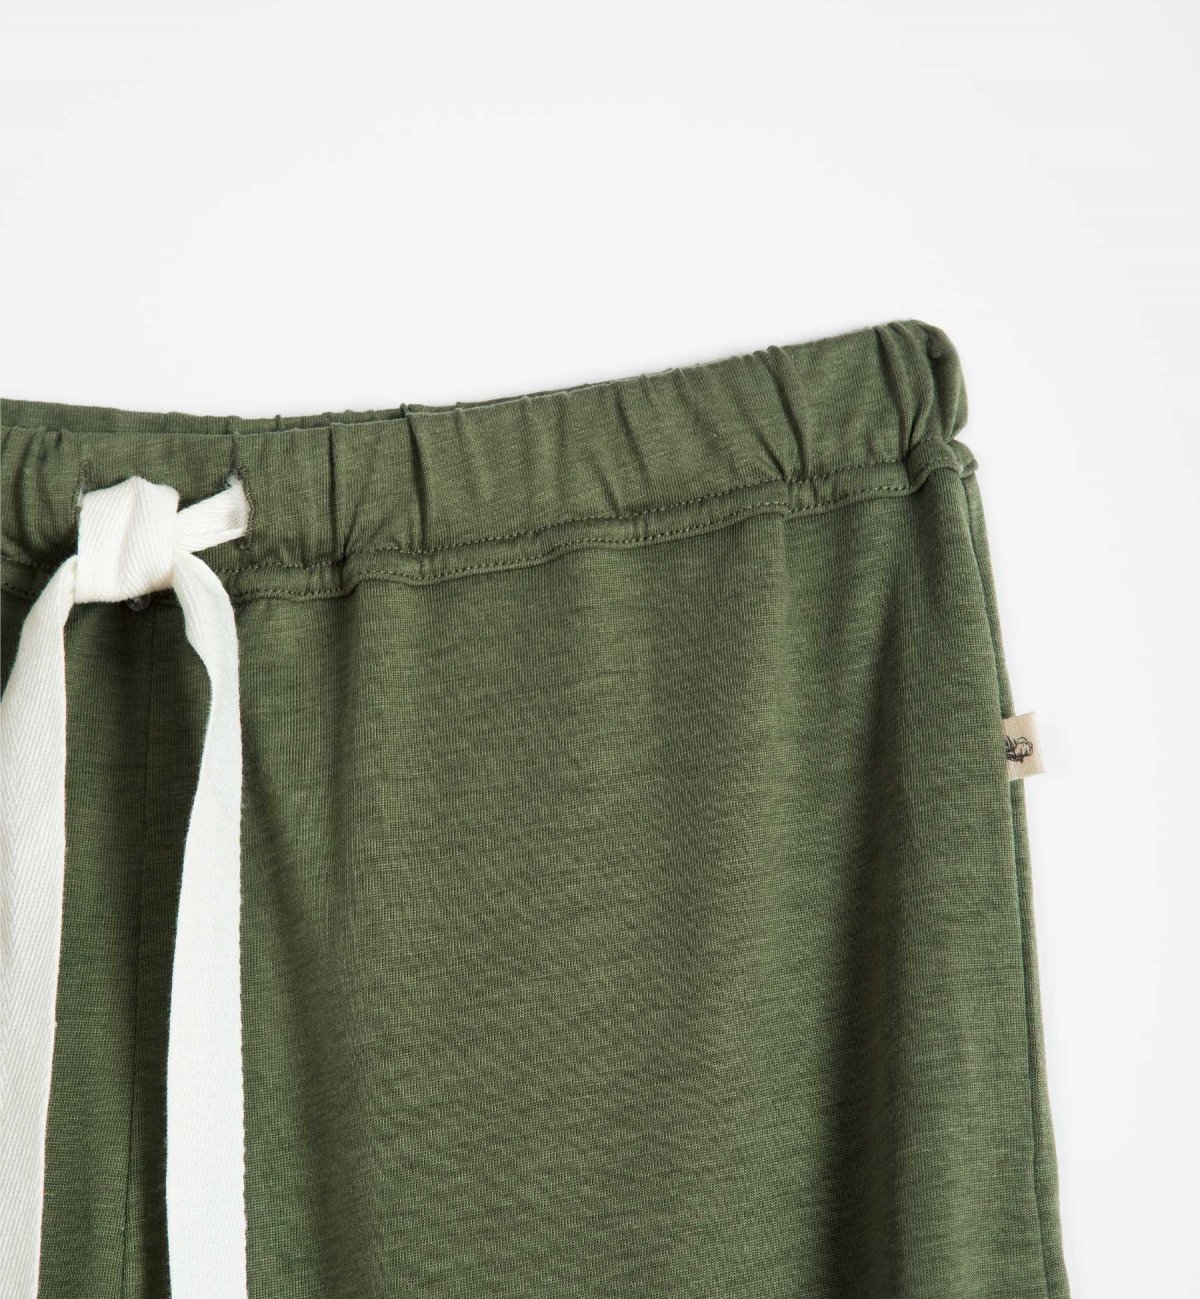 Pantaloni pigiama in Cotone bio e TENCEL™ Sonora